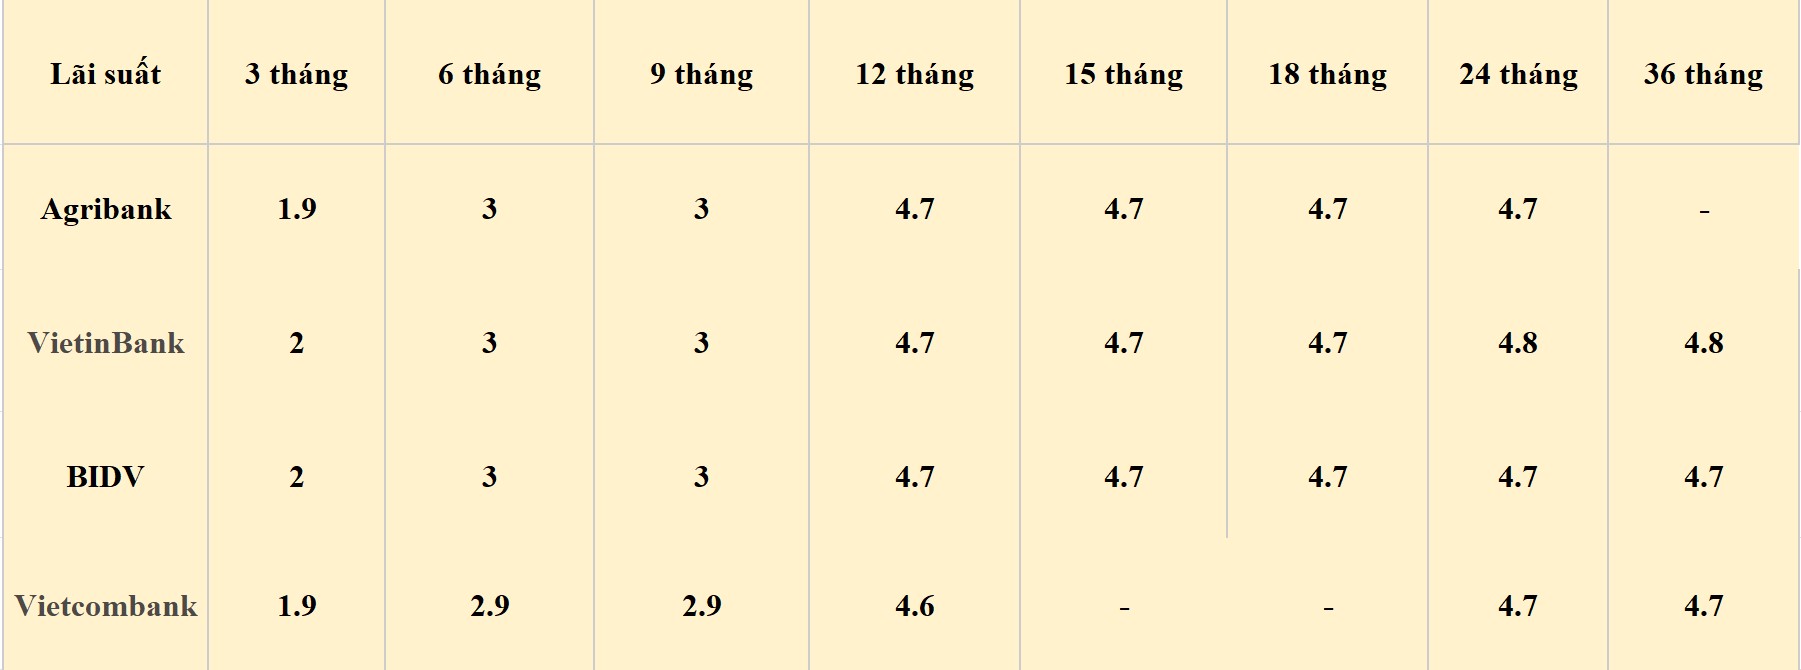 Bảng lãi suất các kỳ hạn tại Vietcombank, Agribank, VietinBank và BIDV. Số liệu ghi nhận ngày 25.5.2024. Đơn vị tính: %/năm. Bảng: Khương Duy